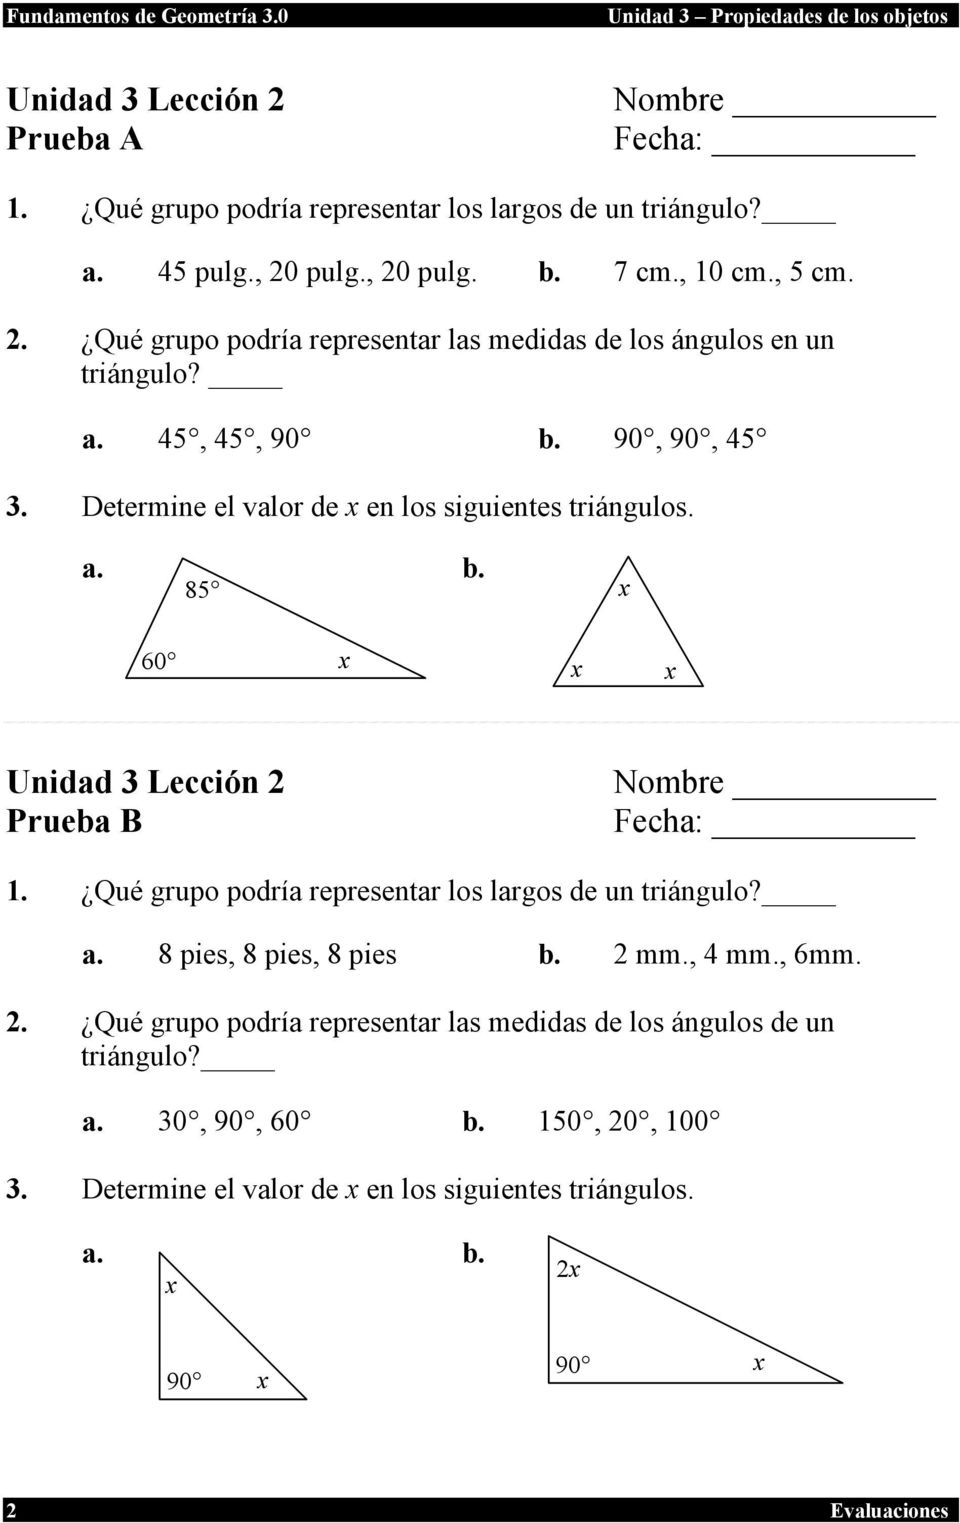 Qué grupo podría representar los largos de un triángulo? a. 8 pies, 8 pies, 8 pies b. 2 